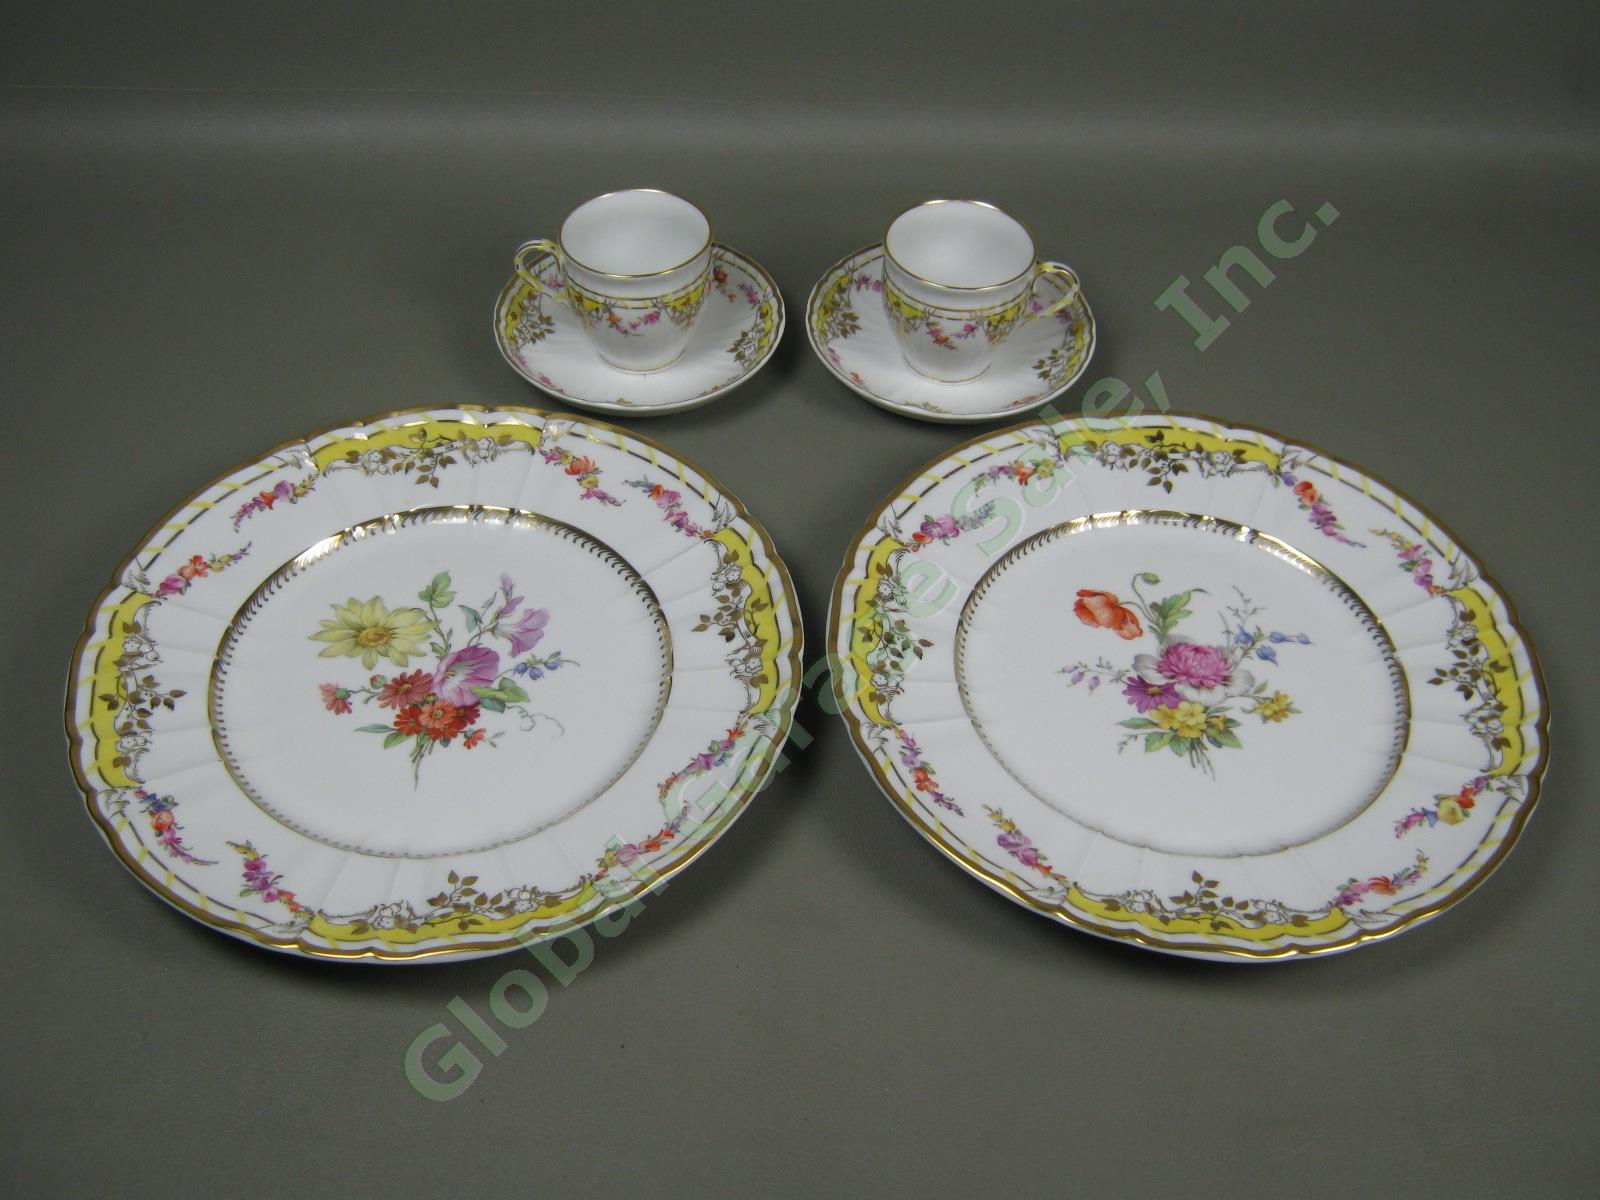 Vtg Antique KPM German Porcelain Dinner Plates Cups & Saucers Set Floral Gilt NR